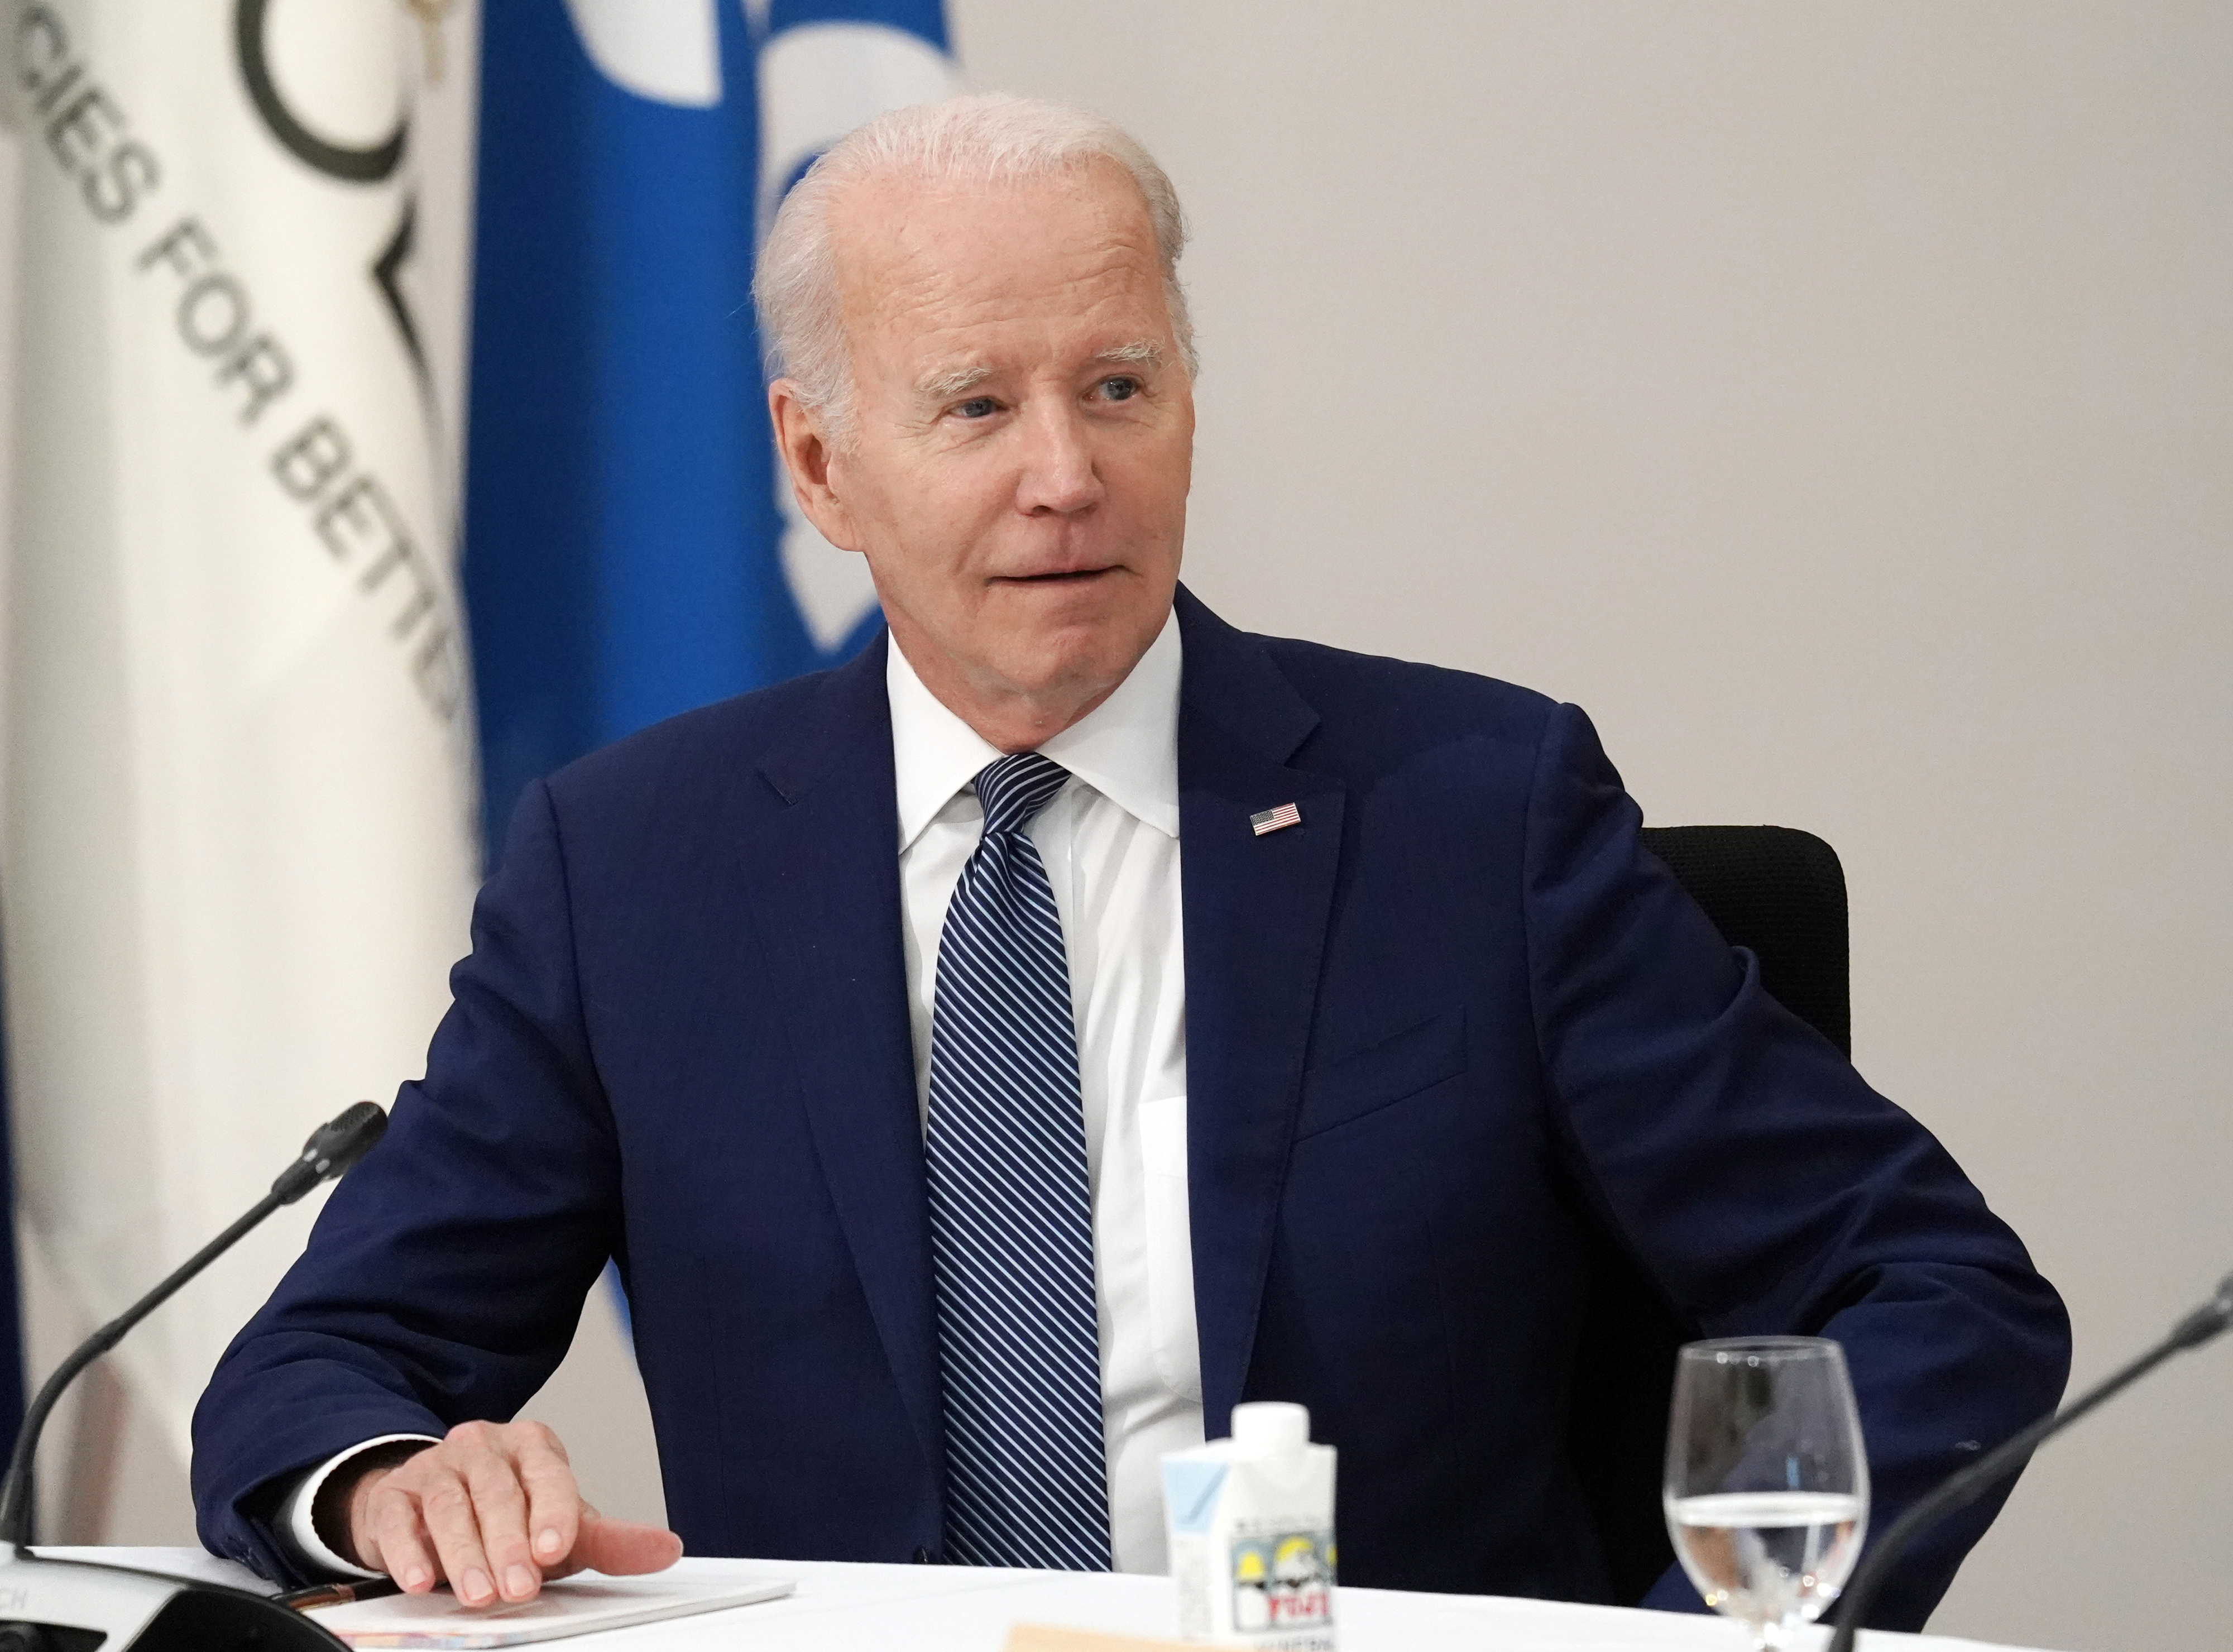 조 바이든 미국 대통령이 지난 5월 20일 일본 히로시마 그랜드 프린스 호텔에서 열린 G7 정상회의 확대세션에 참석하고 있다.